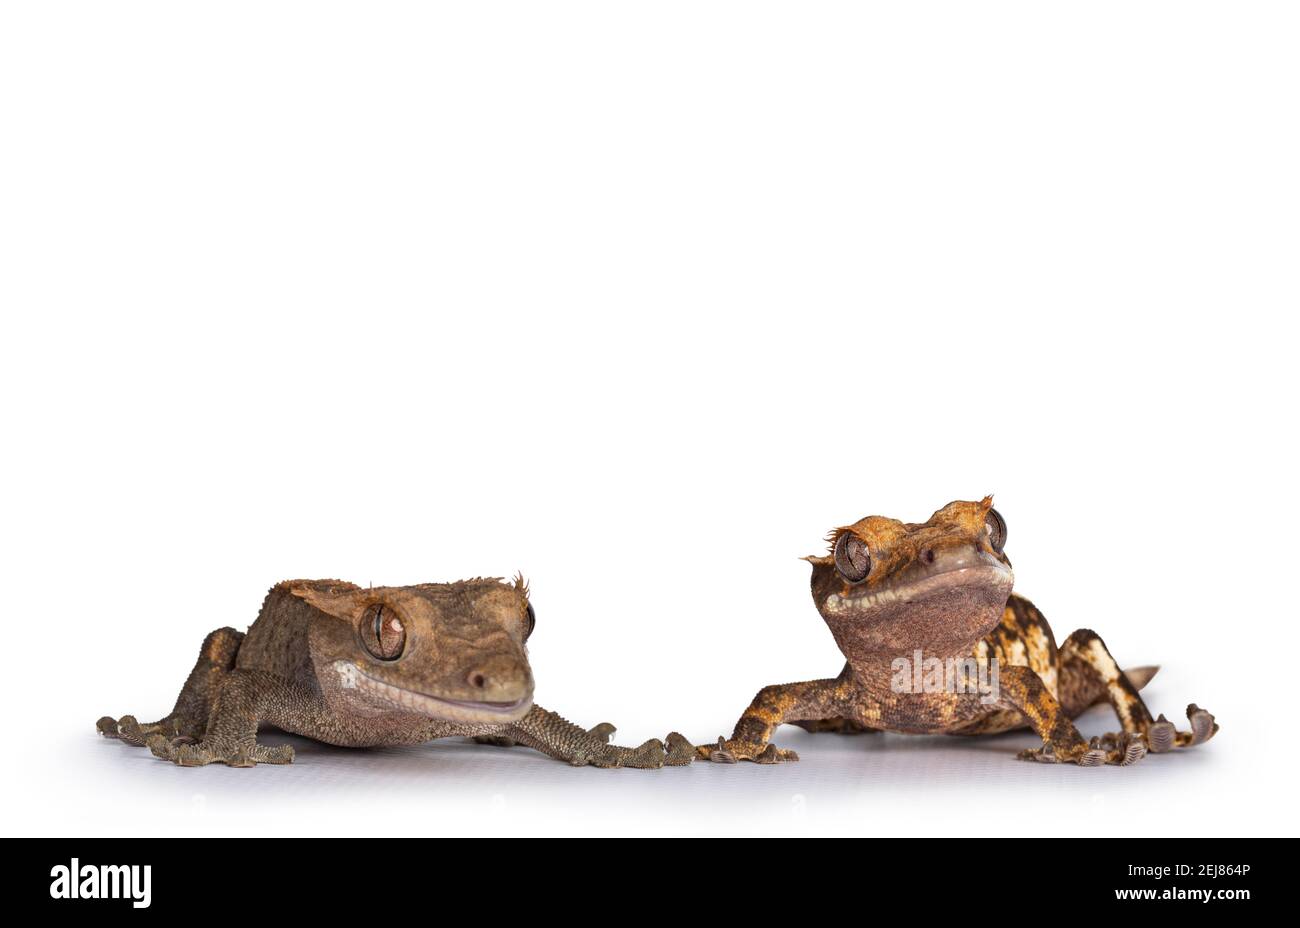 Livello oculare di due Crested Gecko aka Correlophus ciliatus. In piedi davanti e tenendo le mani. Isolato su sfondo bianco. Foto Stock